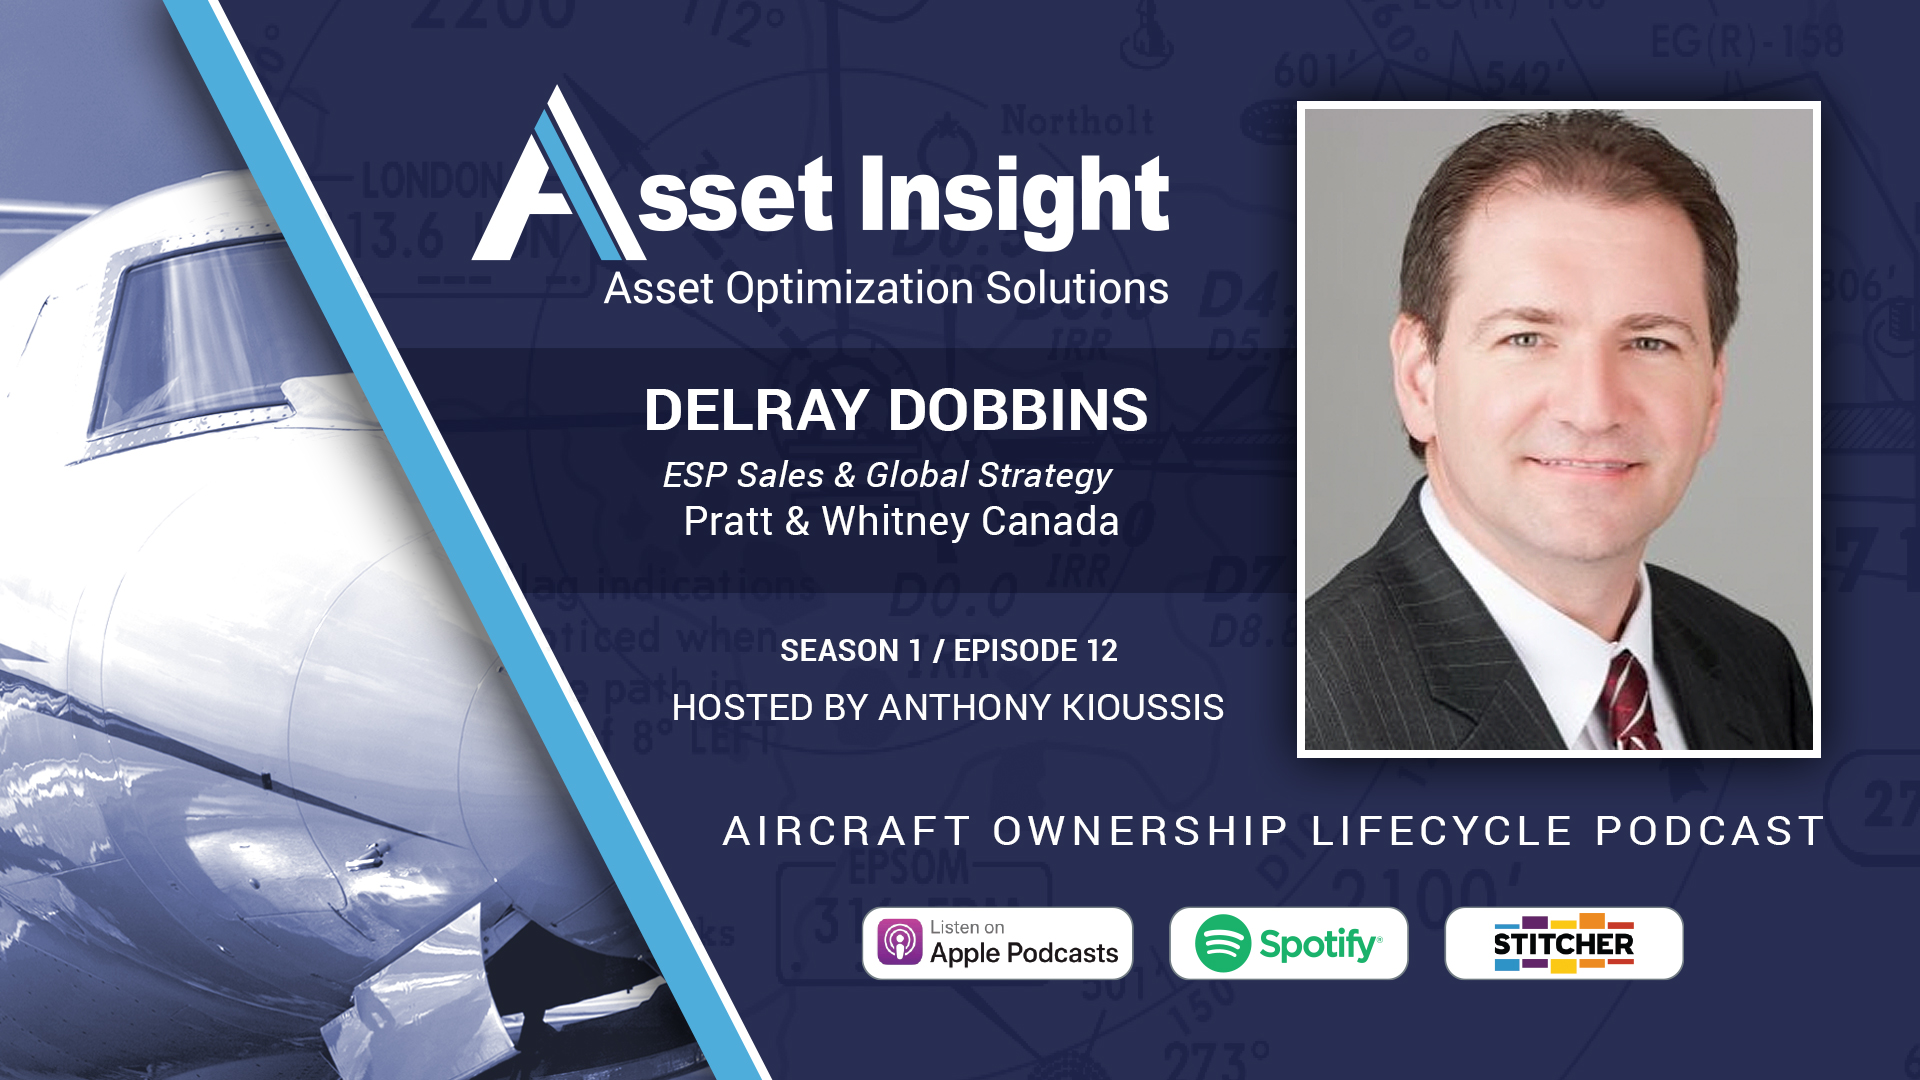 Delray Dobbins, ESP™ Sales & Global Strategy, Pratt & Whitney Canada